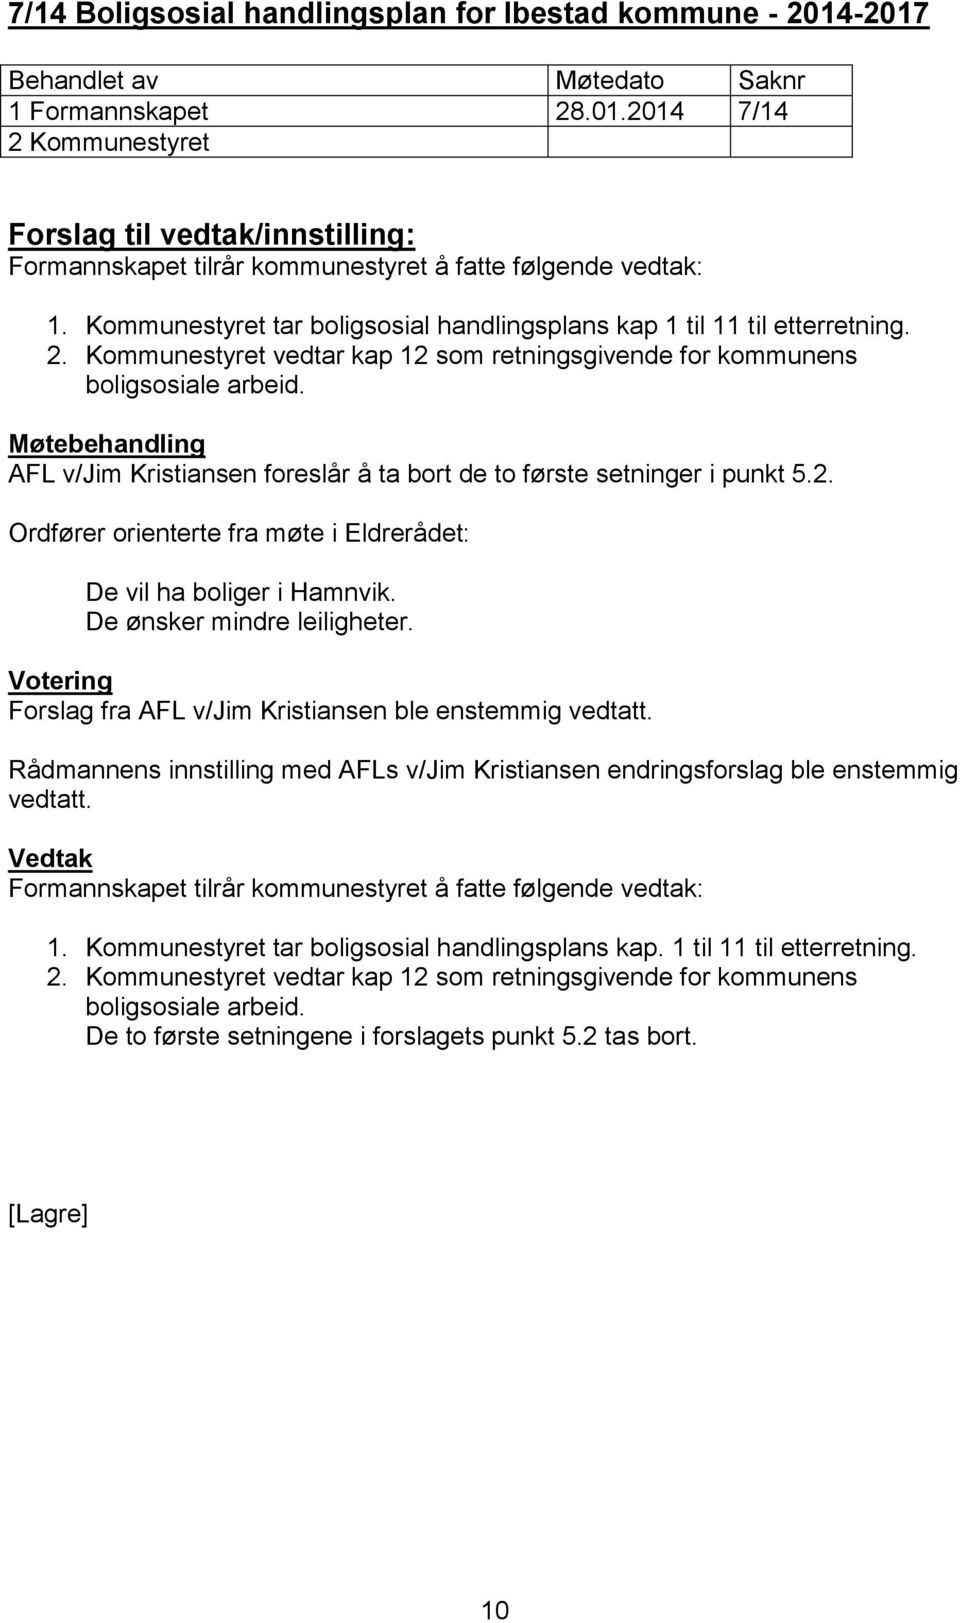 AFL v/jim Kristiansen foreslår å ta bort de to første setninger i punkt 5.2. Ordfører orienterte fra møte i Eldrerådet: De vil ha boliger i Hamnvik. De ønsker mindre leiligheter.